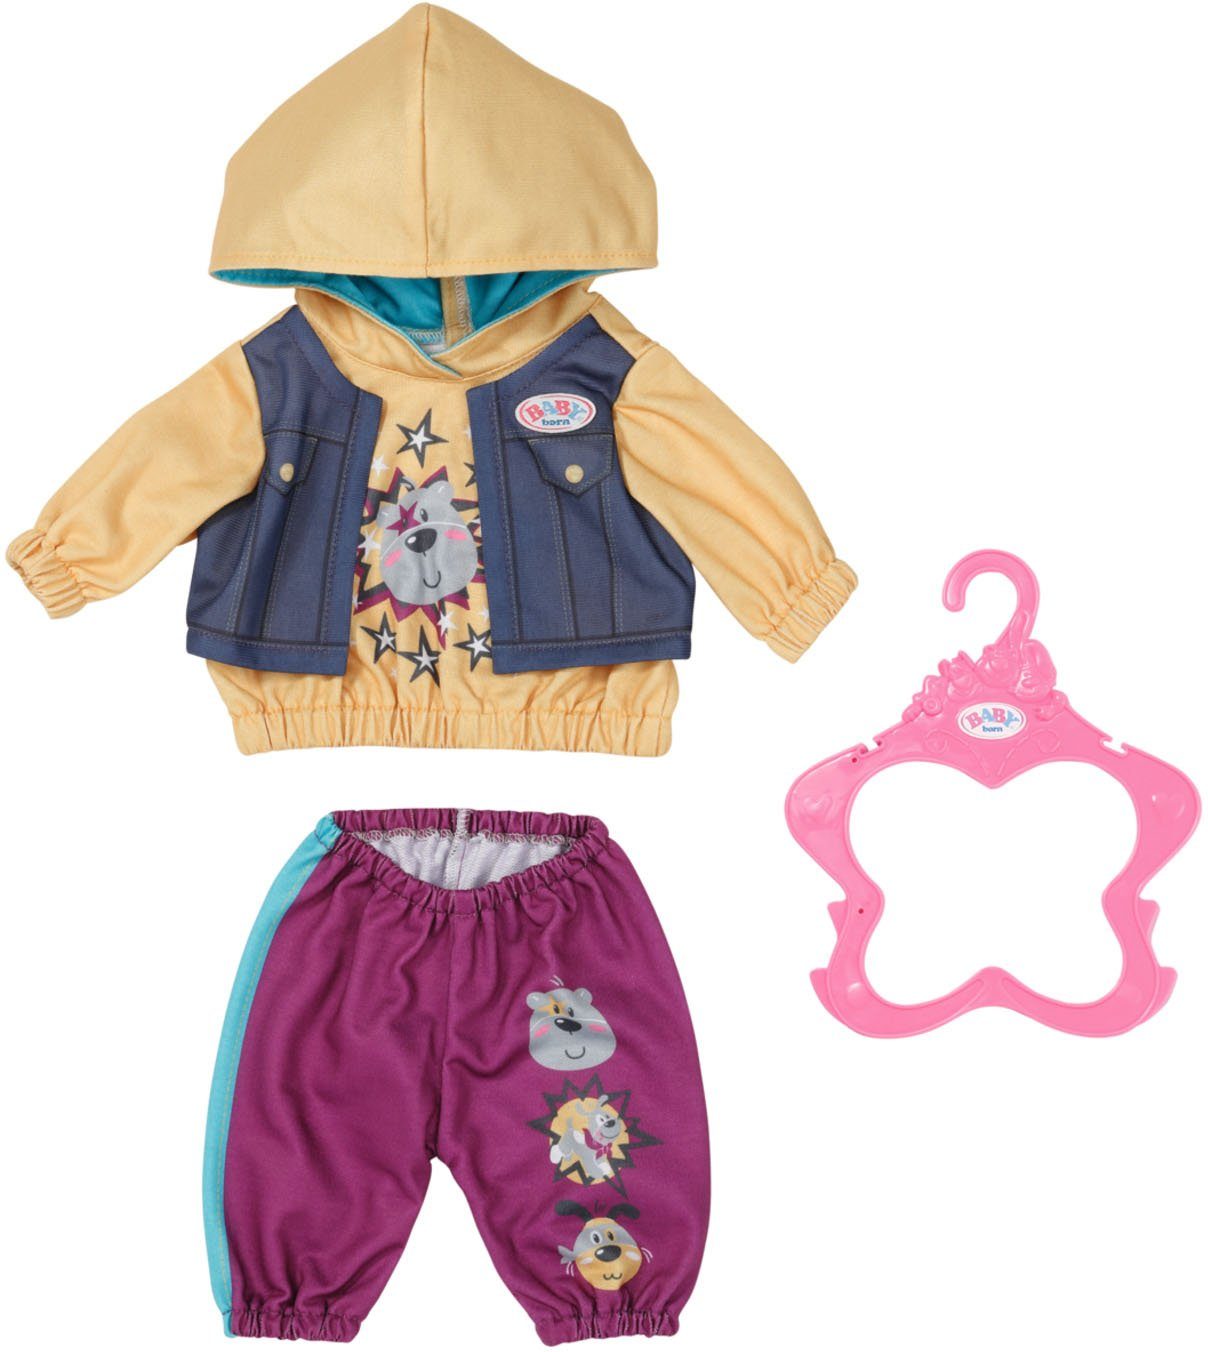 Zapf Creation® Baby Born Puppenkleidung Outfit mit Hoody, 43 cm, mit Kleiderbügel